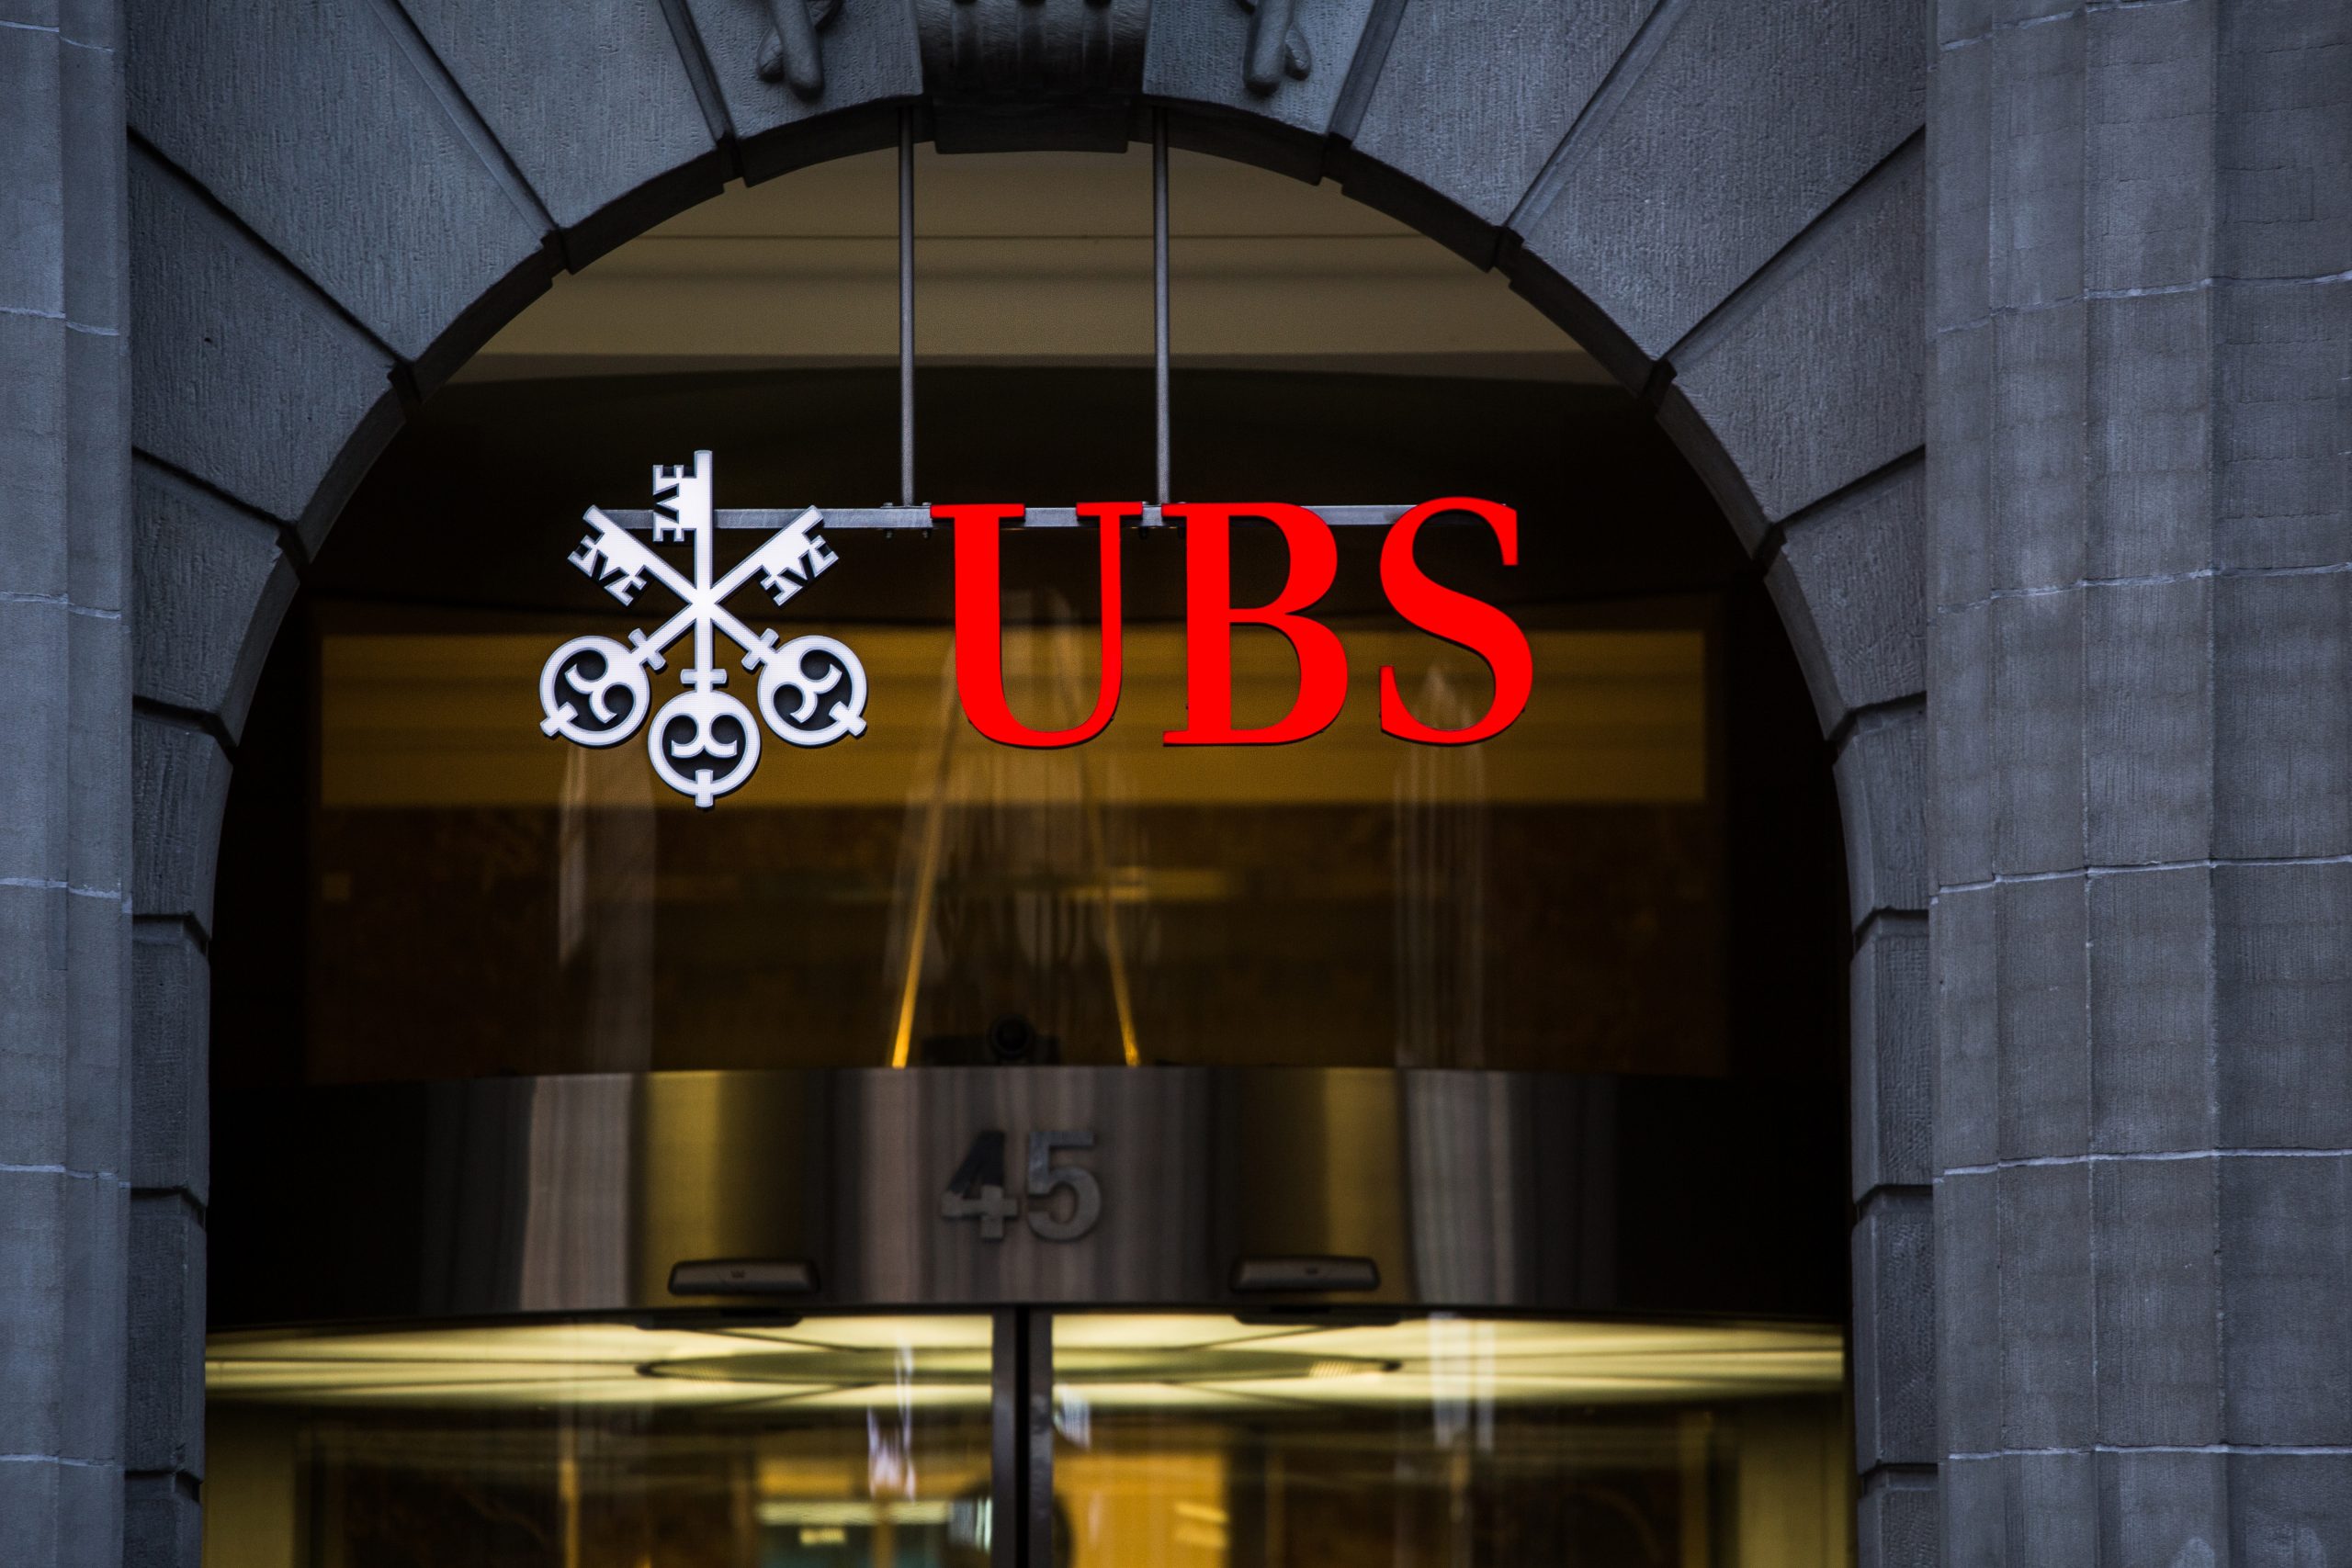 UBS mit starkem Ergebnis im vierten Quartal 2020